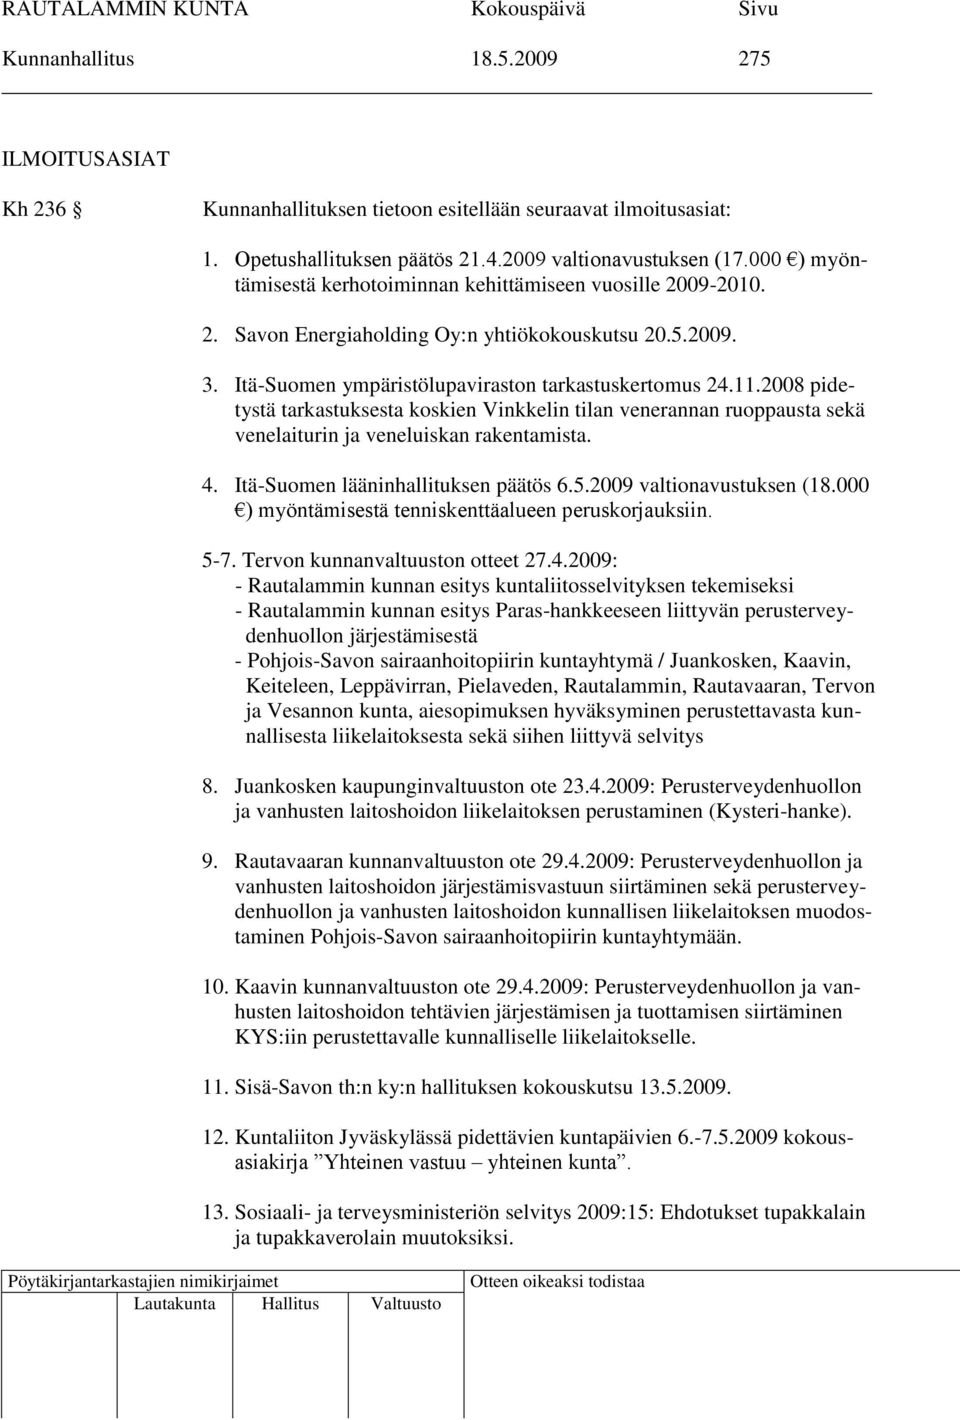 2008 pidetystä tarkastuksesta koskien Vinkkelin tilan venerannan ruoppausta sekä venelaiturin ja veneluiskan rakentamista. 4. Itä-Suomen lääninhallituksen päätös 6.5.2009 valtionavustuksen (18.